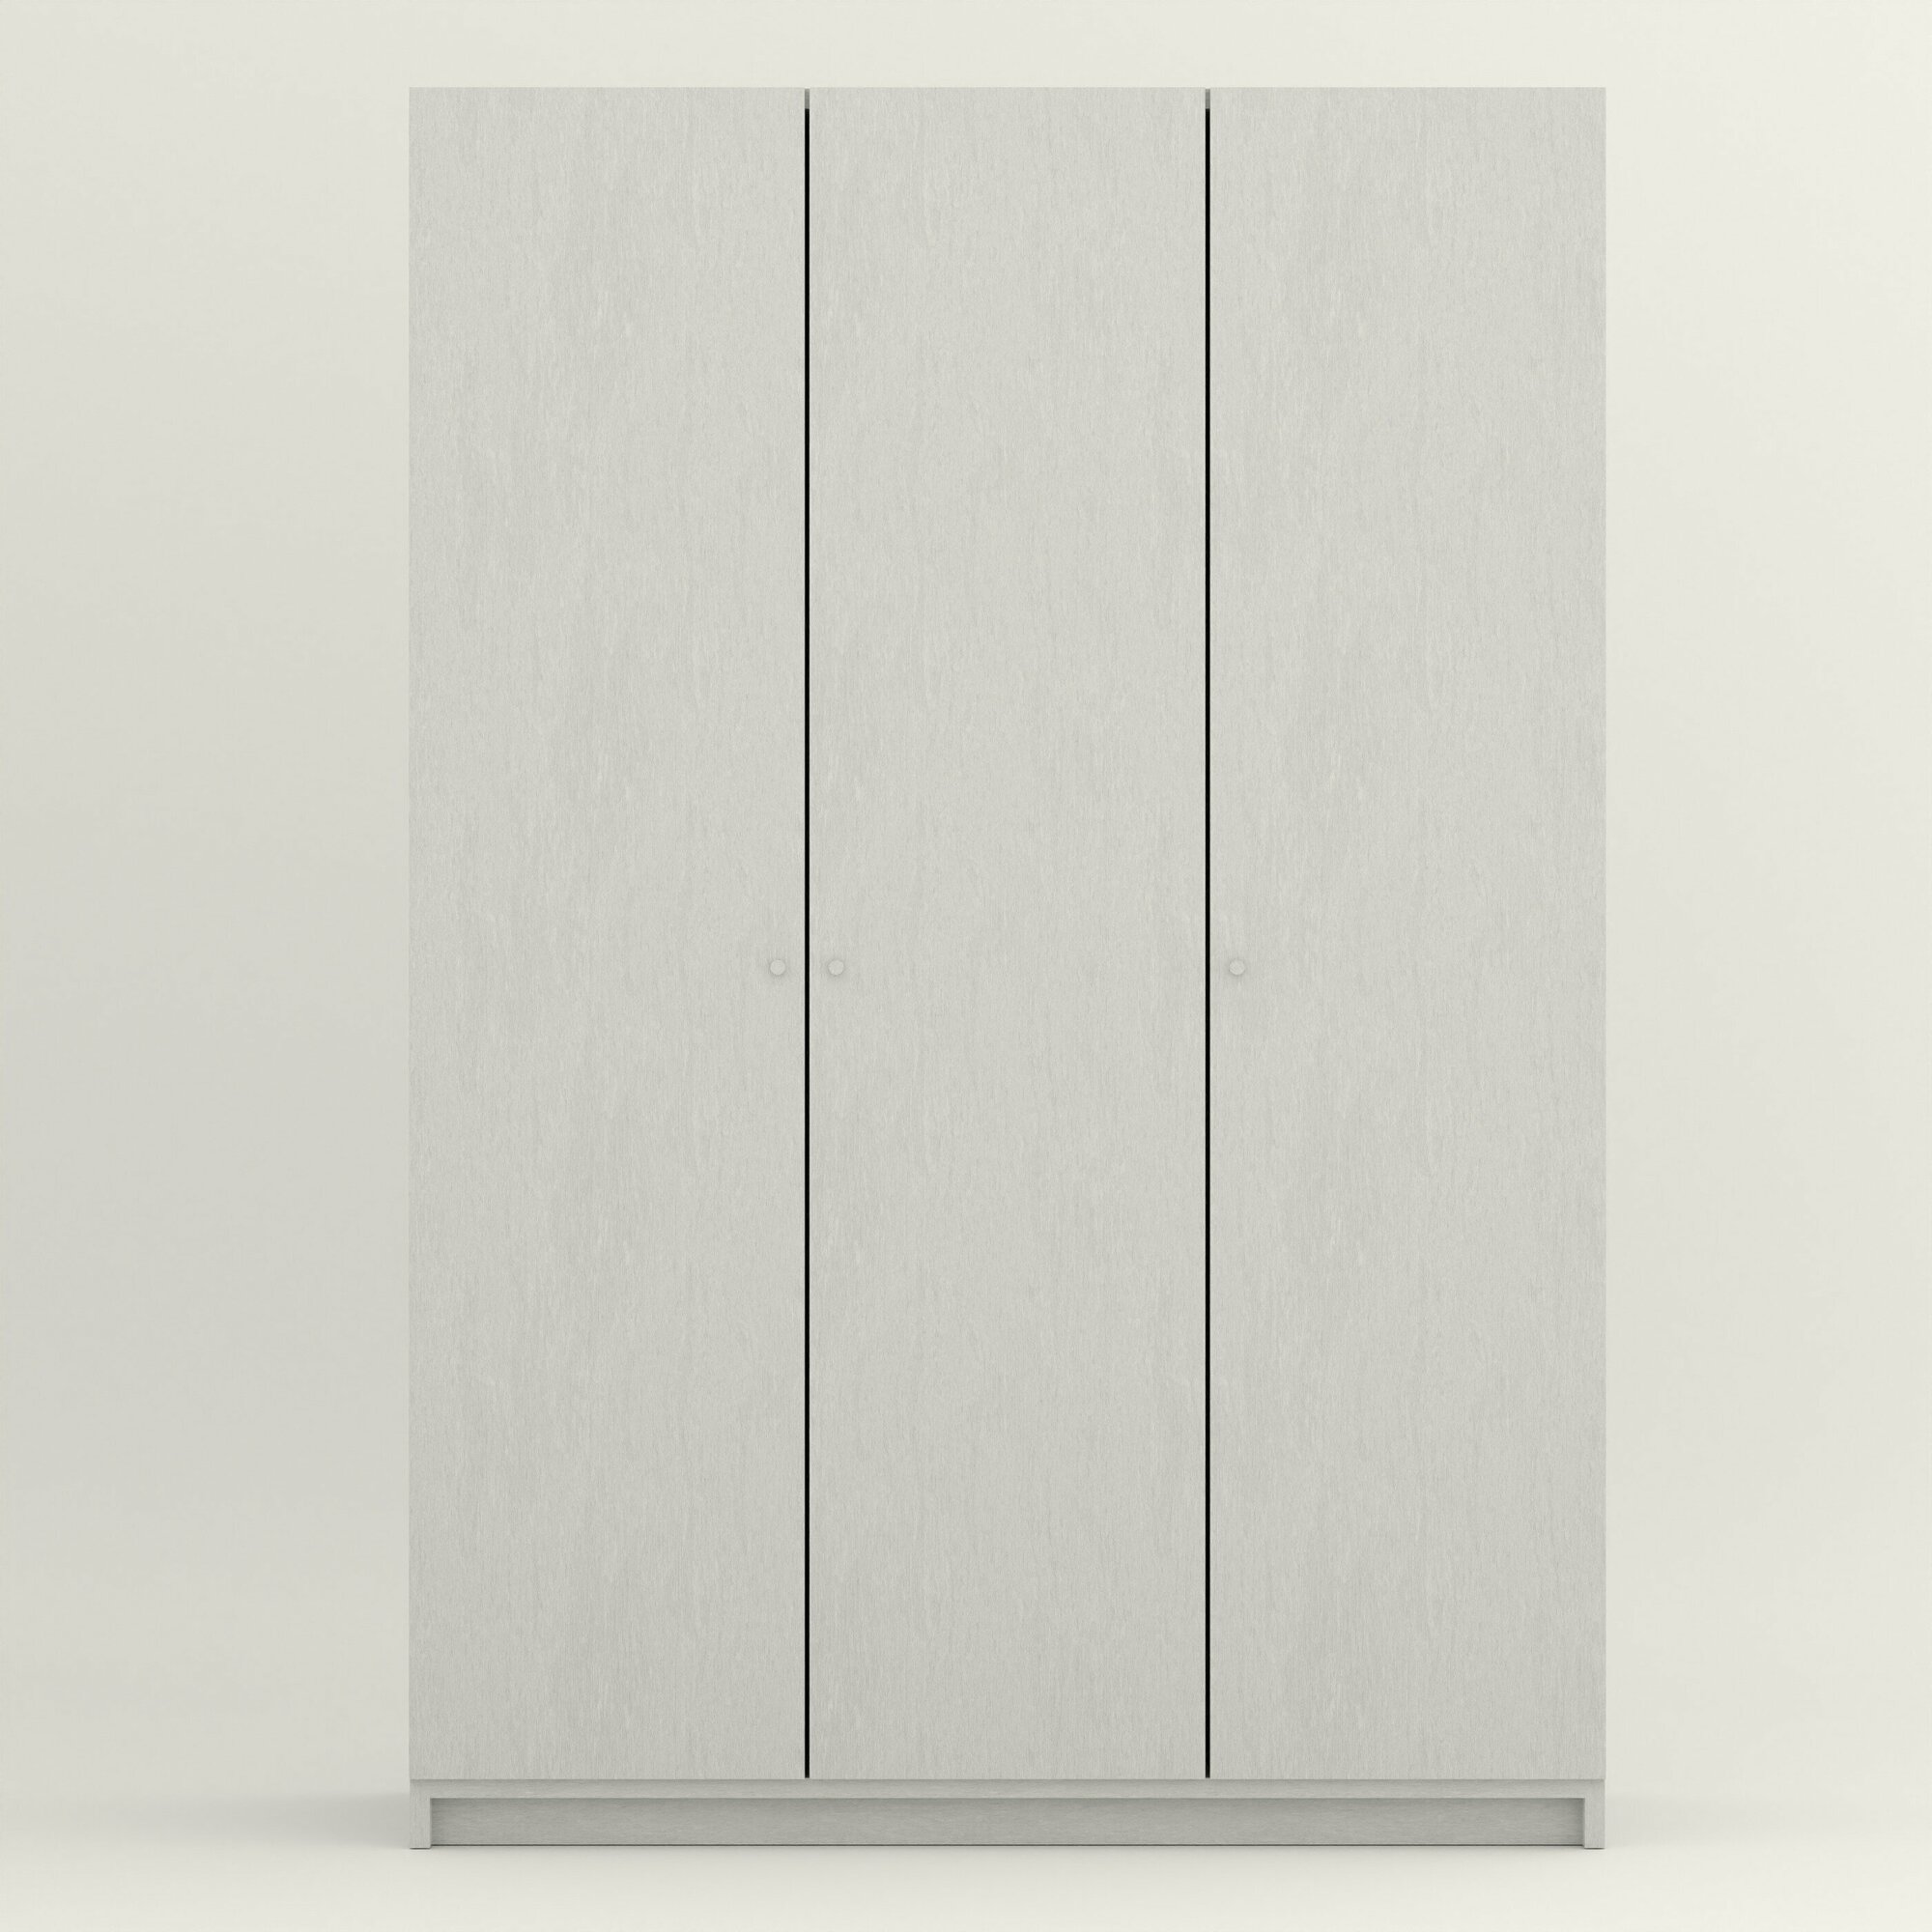 Шкаф распашной белого цвета трехдверный (Ширина 117 см, Высота 240 см Глубина 55 см) для прихожей, спальни, зала, гостинной. - фотография № 3